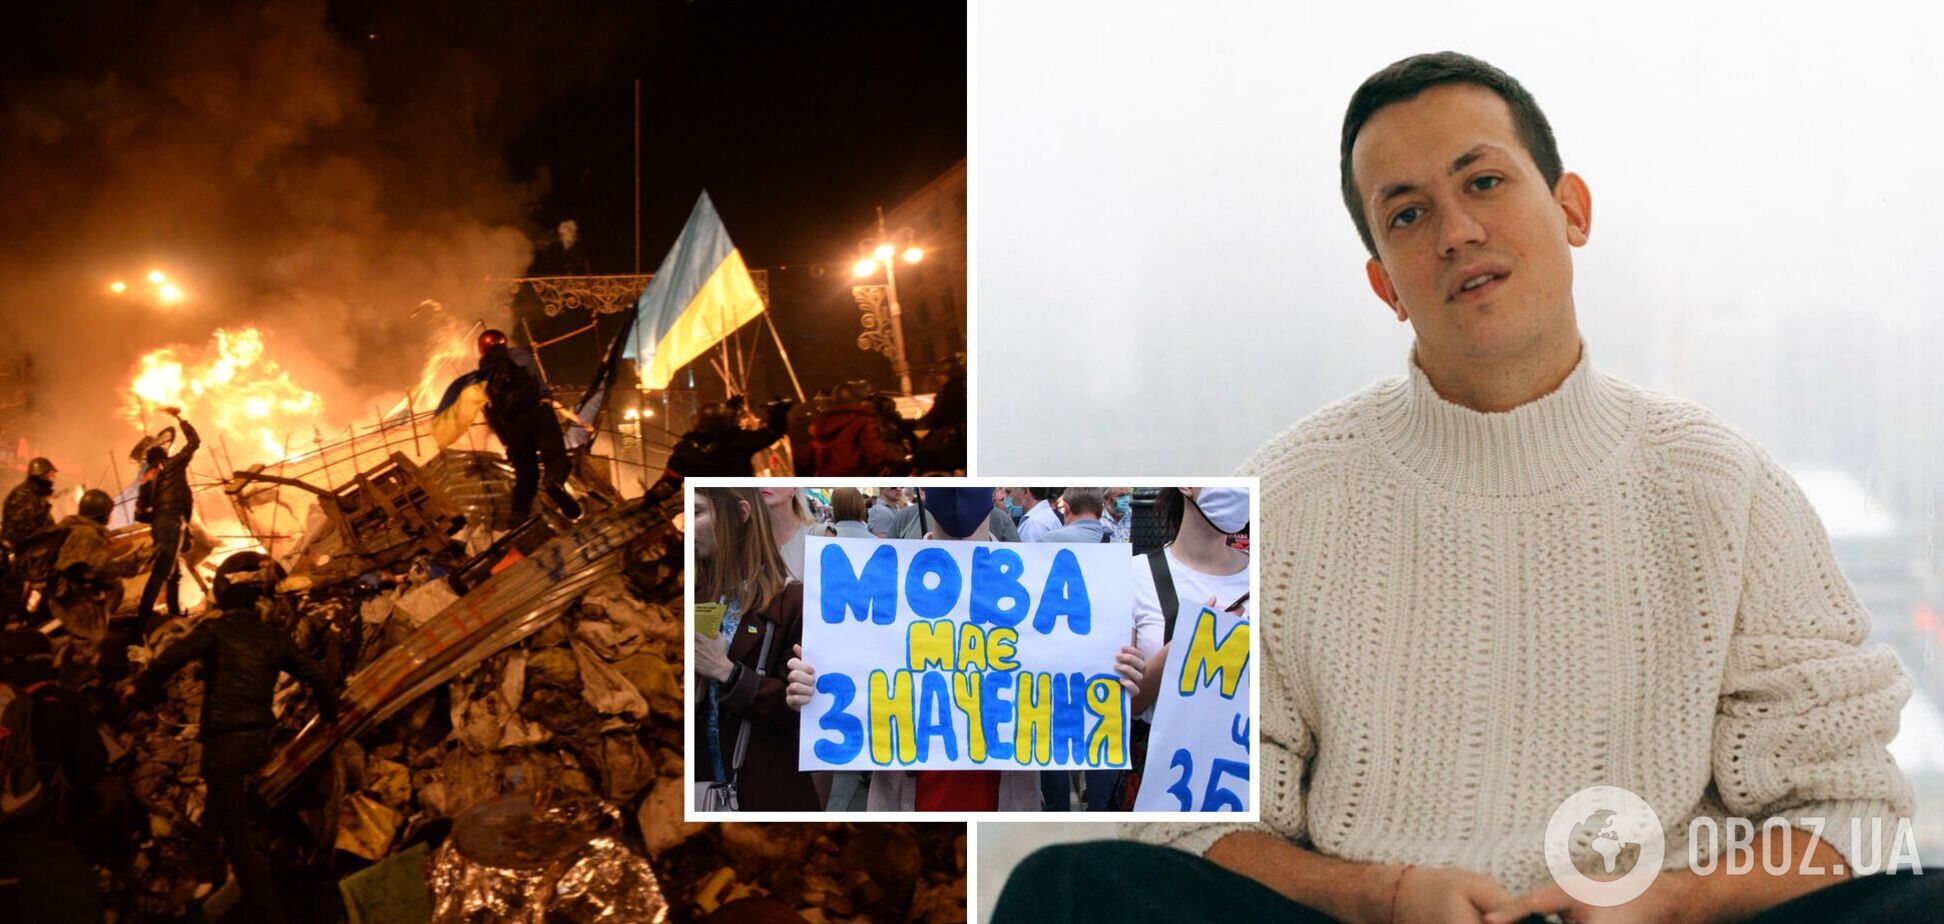 Алексей Дурнев: мне стыдно, что я высмеивал украиноязычных людей и тех, кто поддерживал Майдан